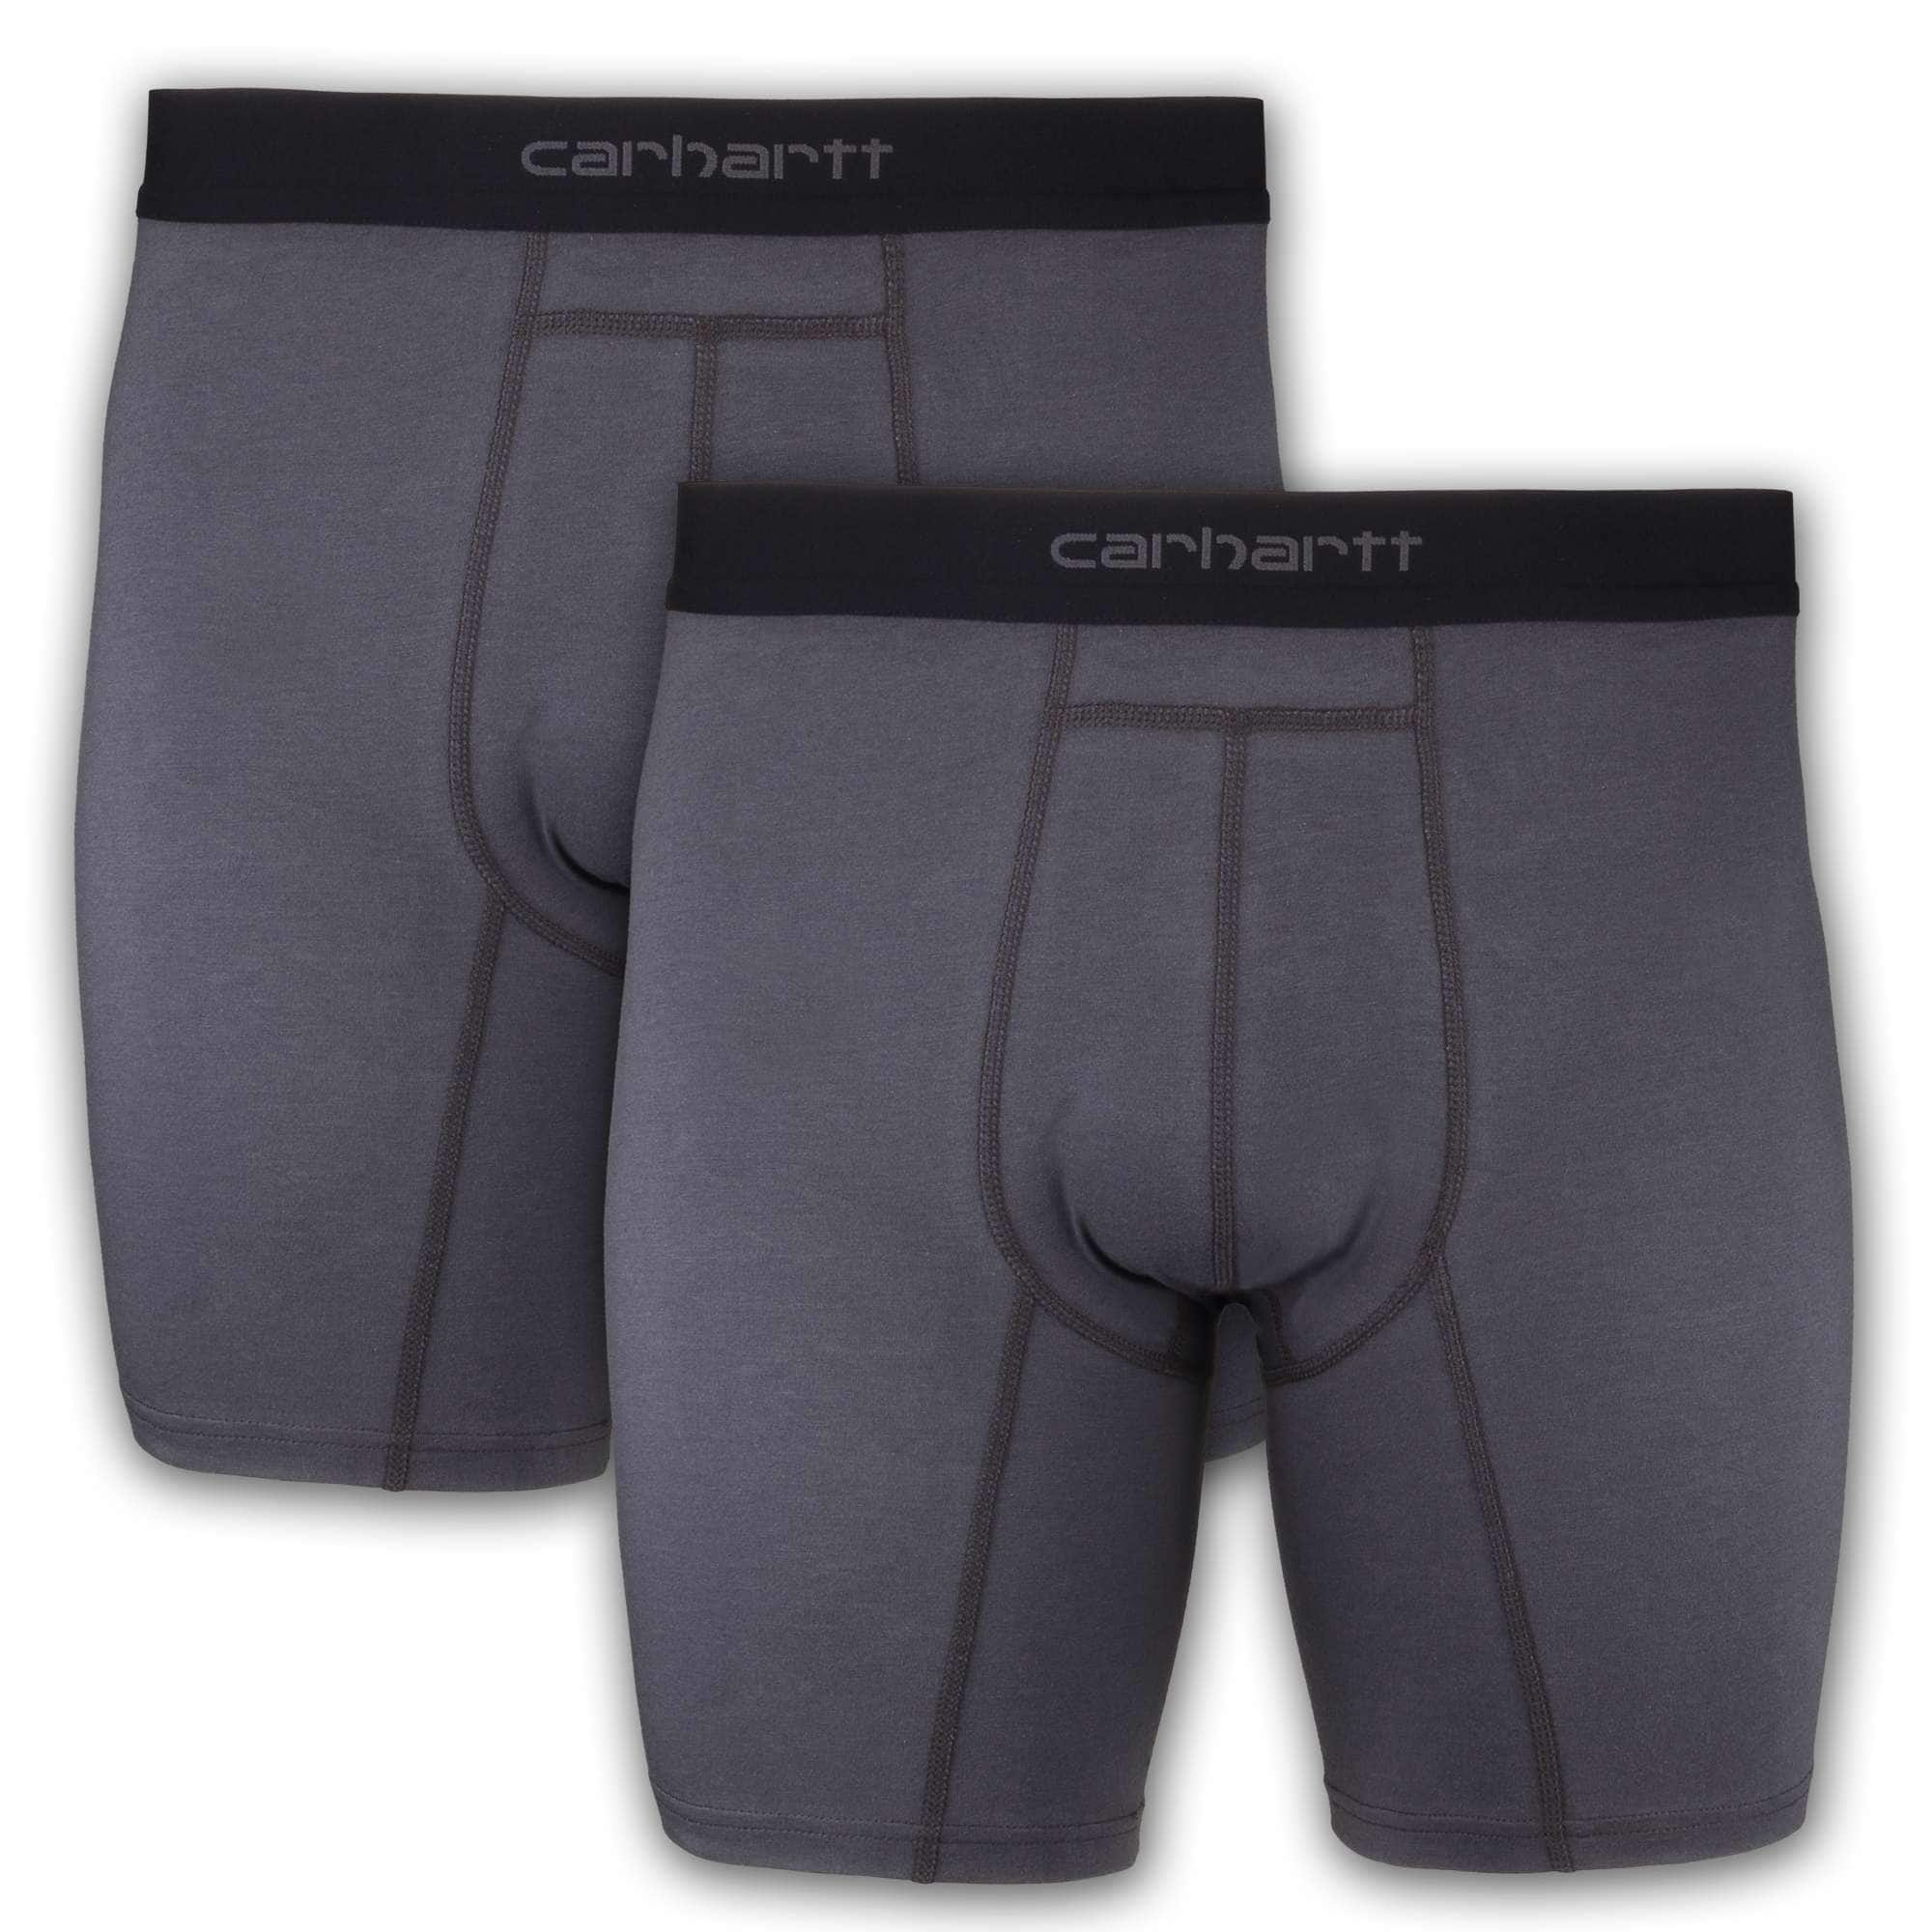 Carhartt Men's Base Force 5 Lightweight Boxer Brief Underwear